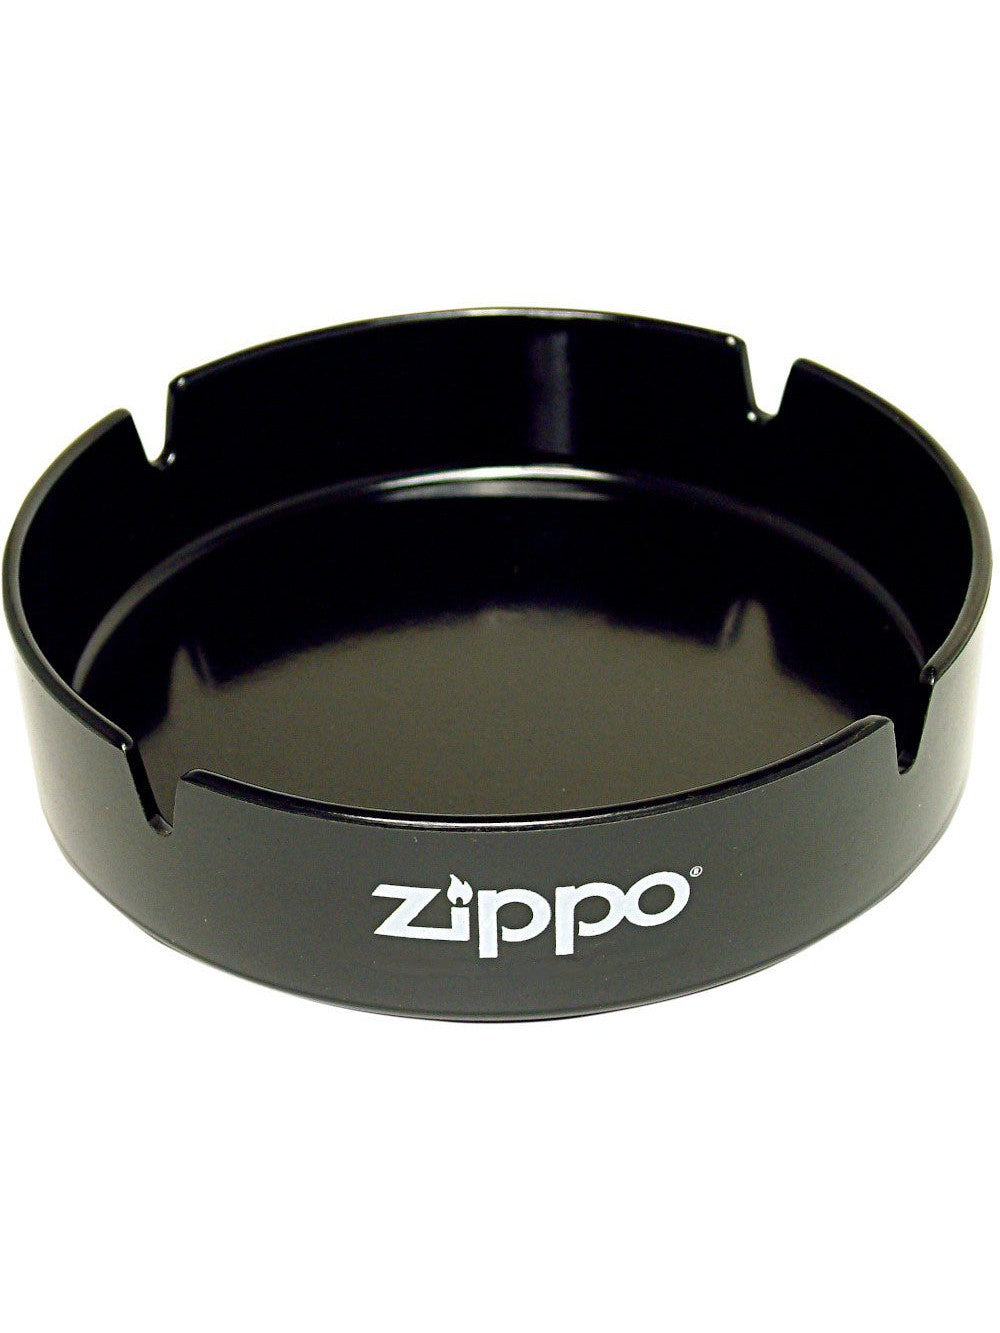 Zippo Ashtray with Zippo Logo - Black ZAT